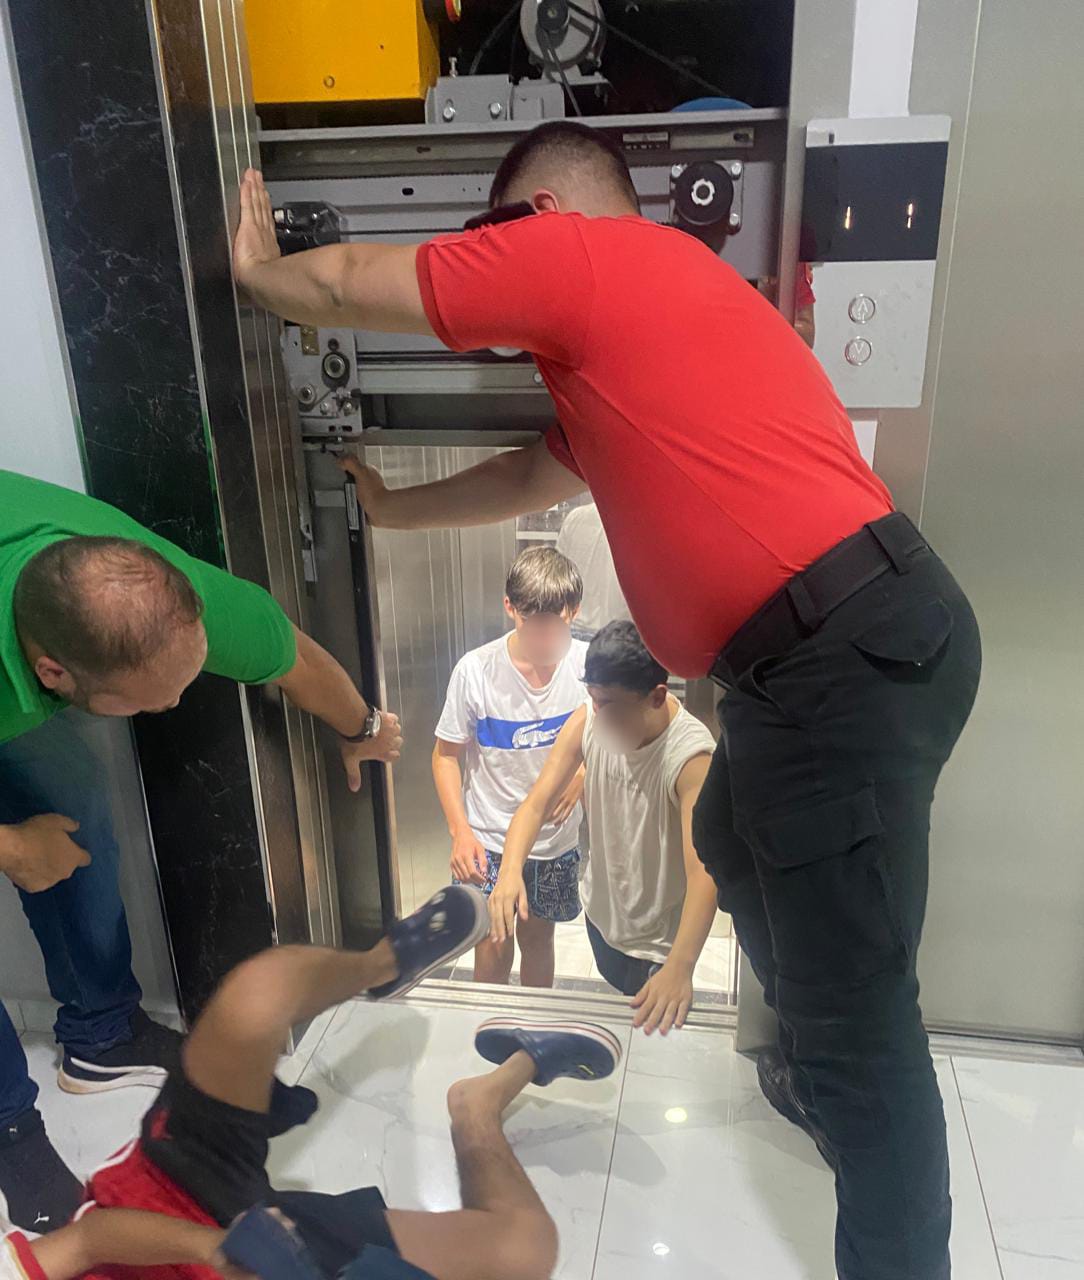 Rescataron a tres niños atrapados en un ascensor imagen-17